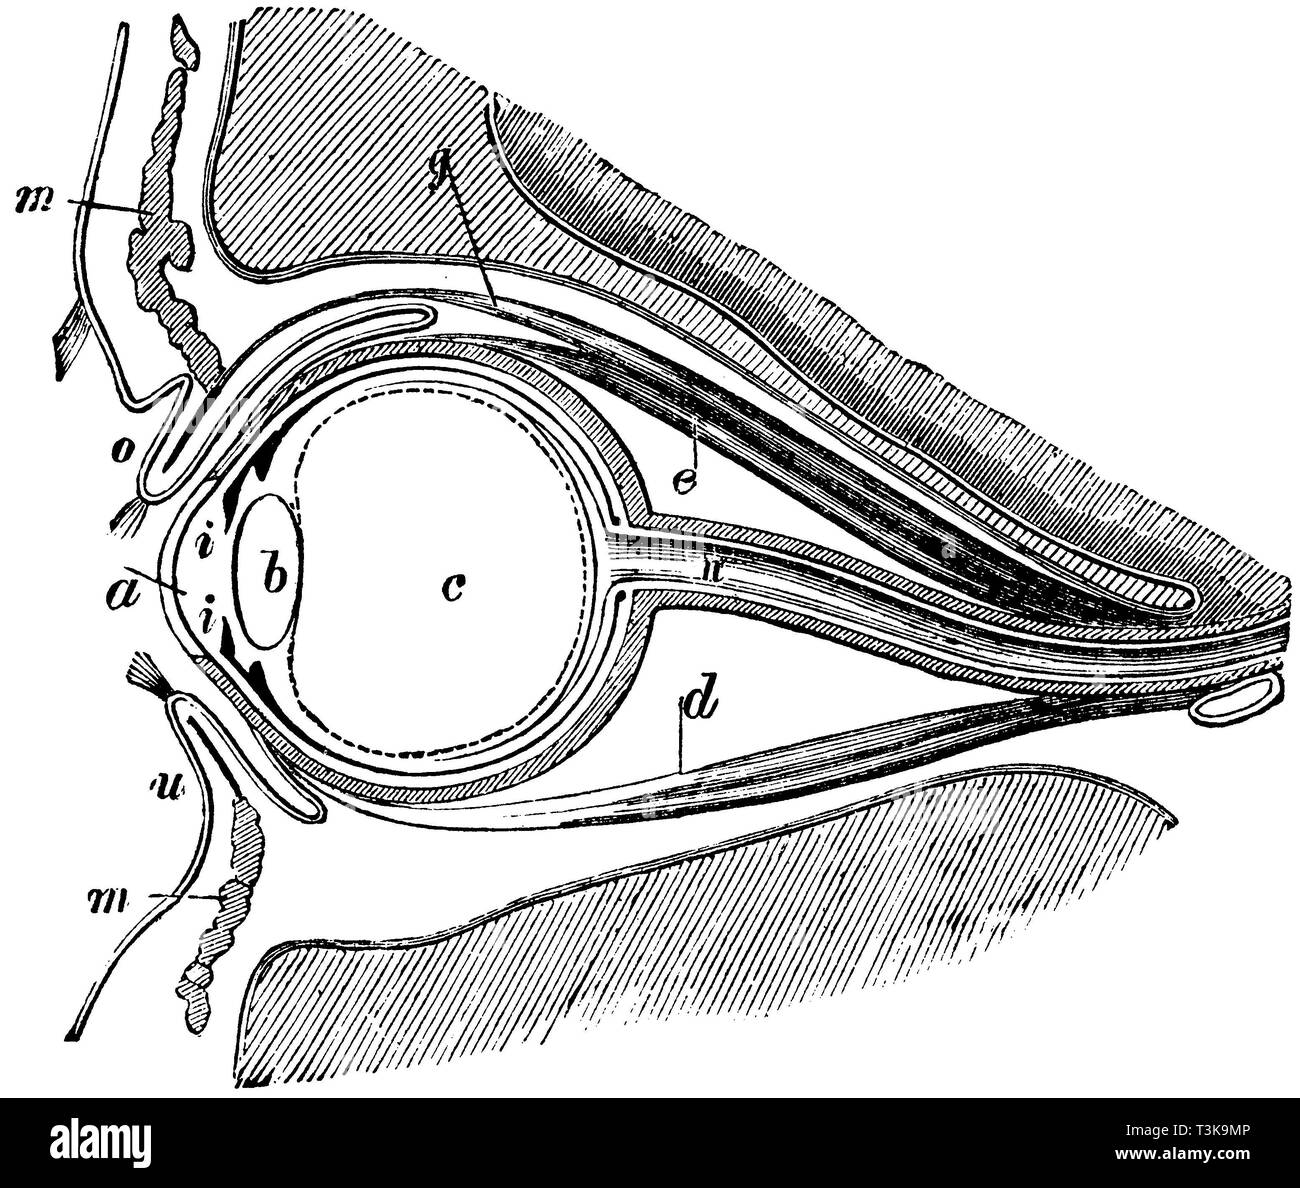 Les droits de l' : section verticale de l'oeil humain . a) cornée b ) c ) , Krystallinse , vitreux d ) de la partie inférieure du muscle de l'œil droit , e) l'oeil droit supérieur levator muscle , g) muscle de la paupière supérieure , i ) Iris , m) muscle circulaire , n) nerf optique , o) paupière supérieure , u) paupière inférieure;Homme : section verticale de l'œil humain. a) b) de la cornée, cristallin, vitré, c) d) tout droit inférieur muscle oculaire, e) muscle oculaire droit supérieur, g) Levée de muscle de la paupière supérieure, i) iris, m) cercles, n), o du nerf optique) de la paupière supérieure, u) paupière inférieure, anonym 1877 Banque D'Images